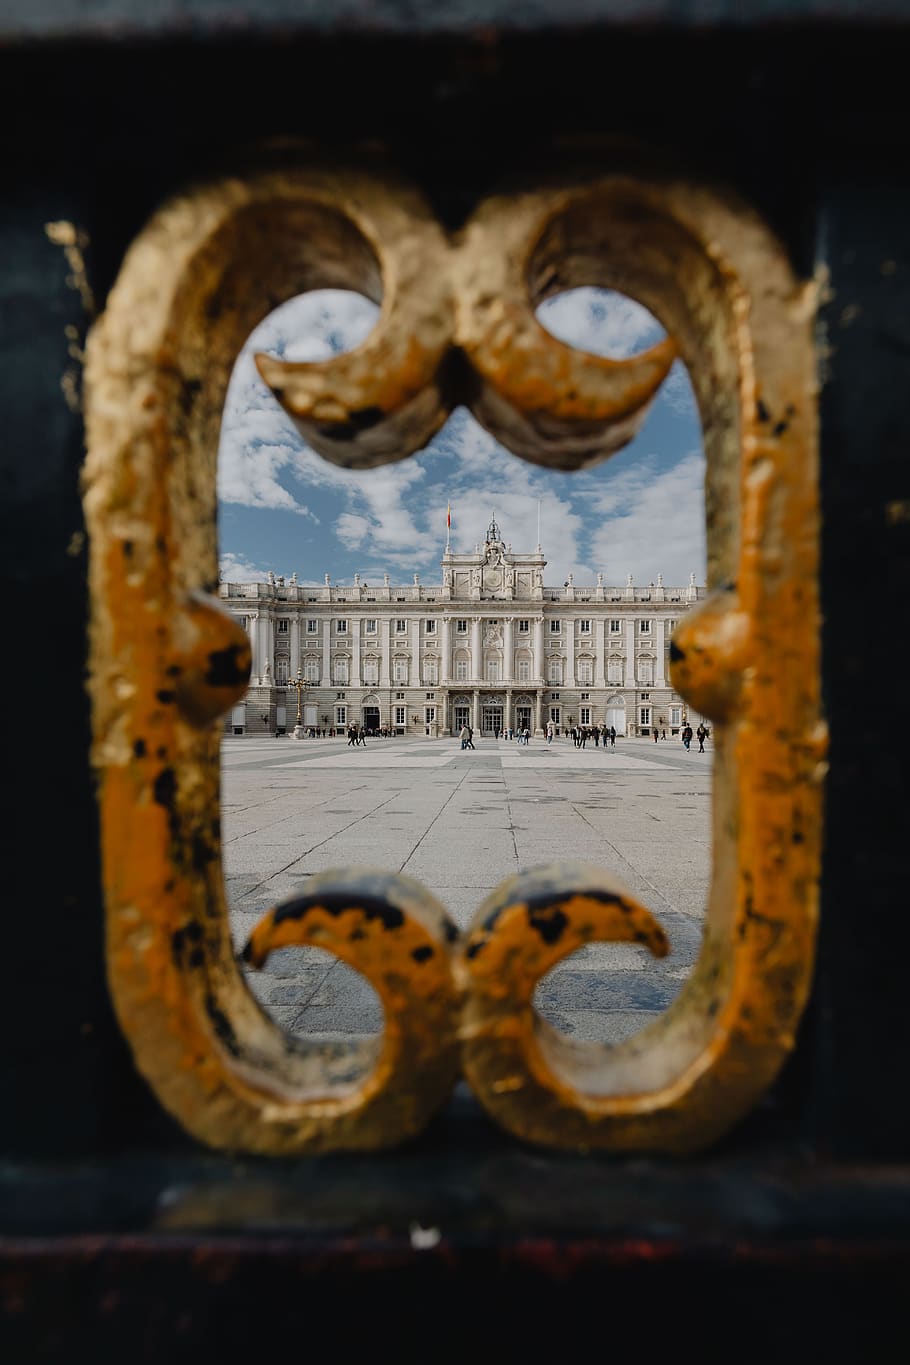 Istana Kerajaan Madrid, Eropa, sejarah, perjalanan, madryd, hiszpania, palacio, Kerajaan, Istana, Sabatini